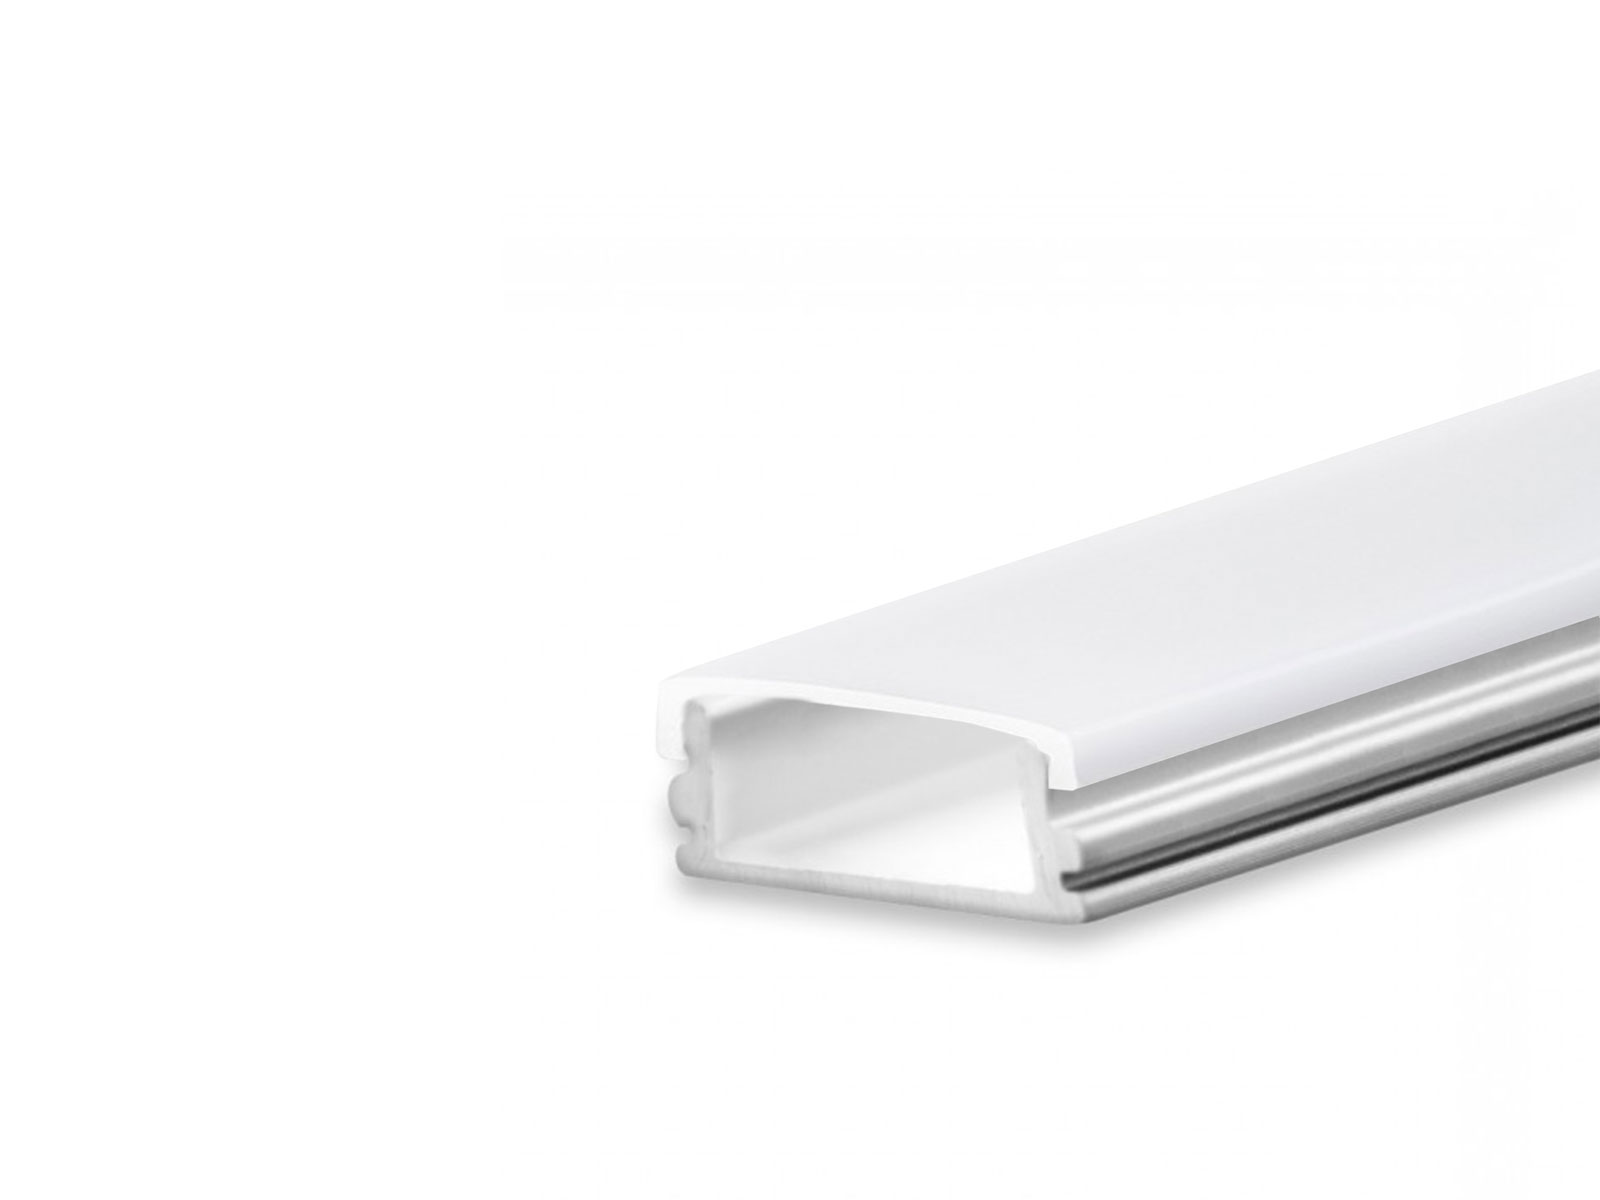 LED Profil AL-PU10 silber mit opalweißer Abdeckung flach 2m kaufen | PUR-LED